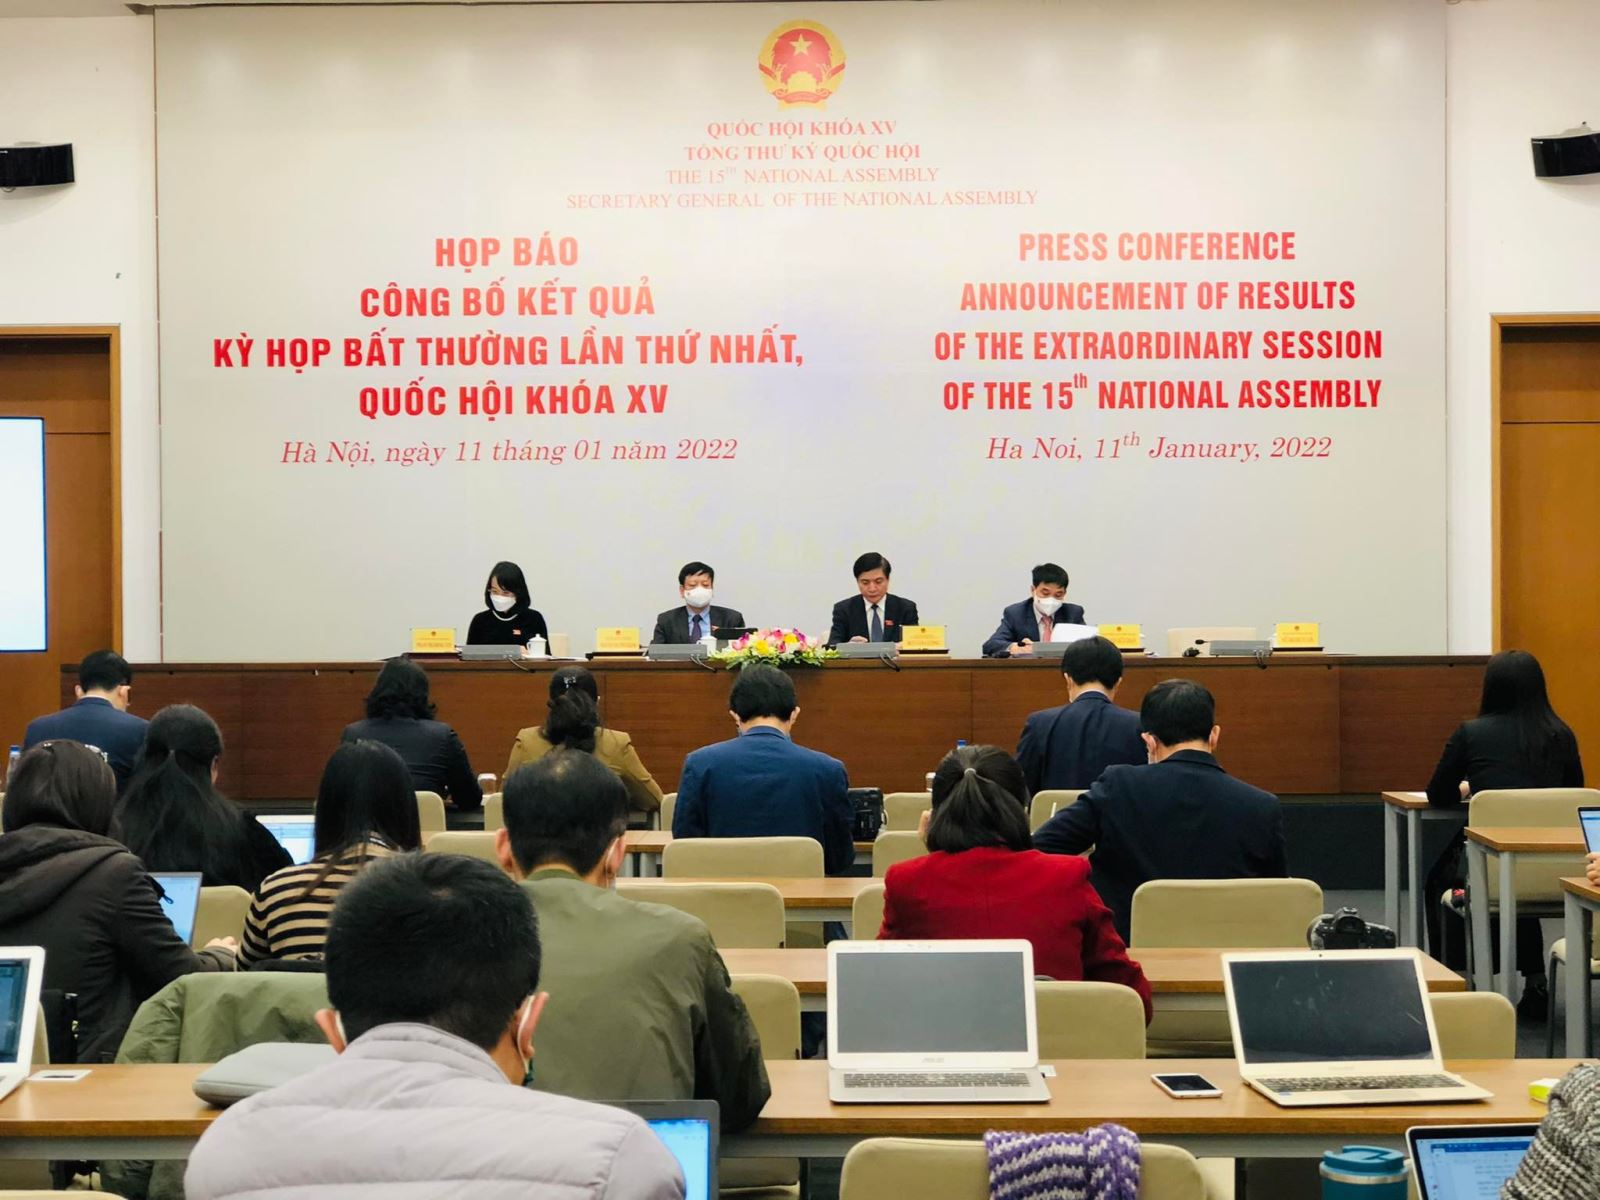 Tổng Thư ký Quốc hội Bùi Văn Cường chủ trì họp báo công bố kết quả Kỳ họp bất thường lần thứ nhất, Quốc hội khóa XV. 